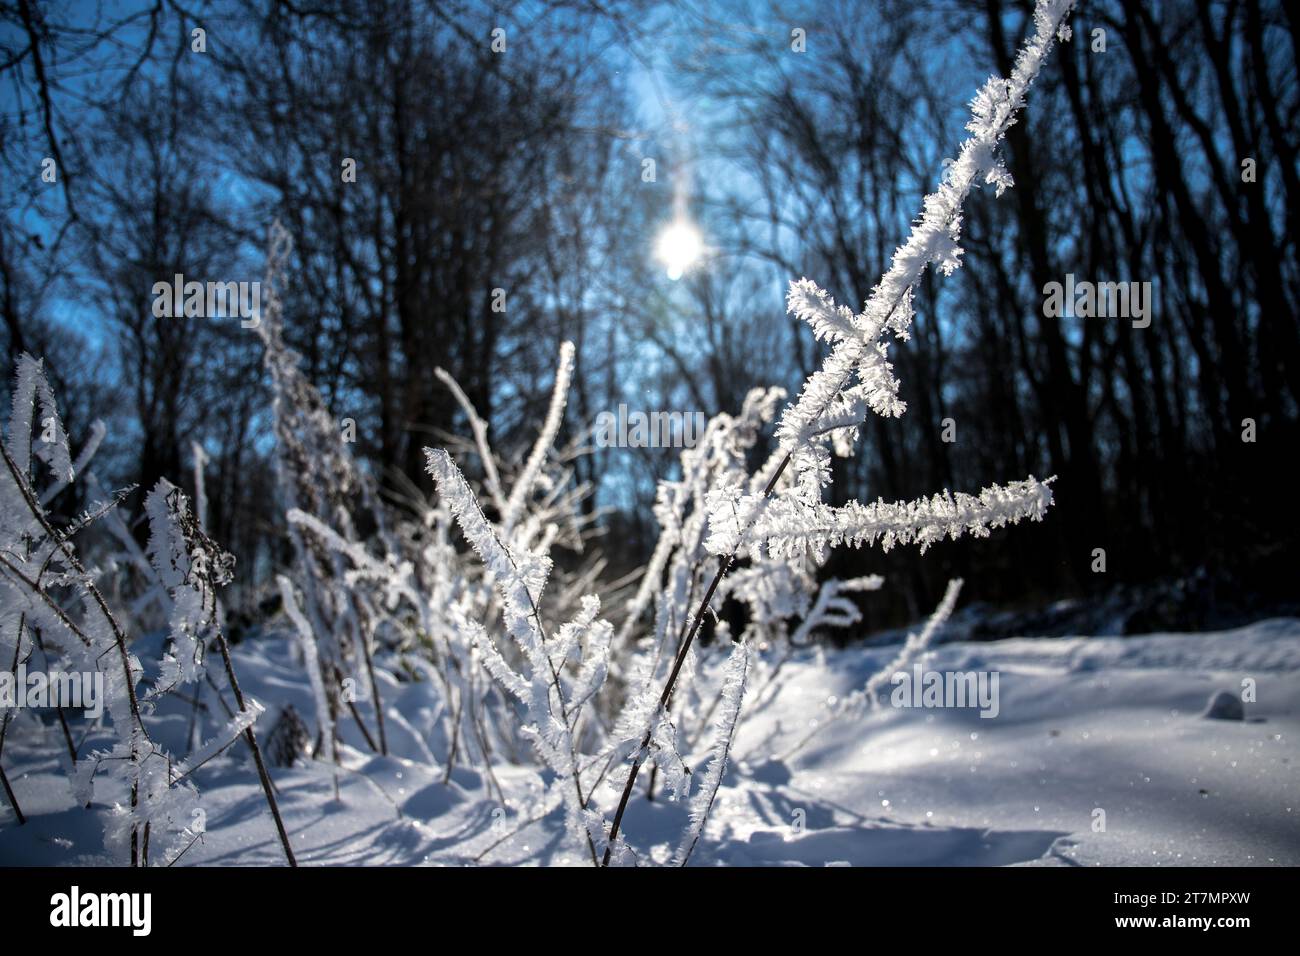 Winterlandschaft mit Eis, Schnee und frostigen weißen Bäumen Stock Photo